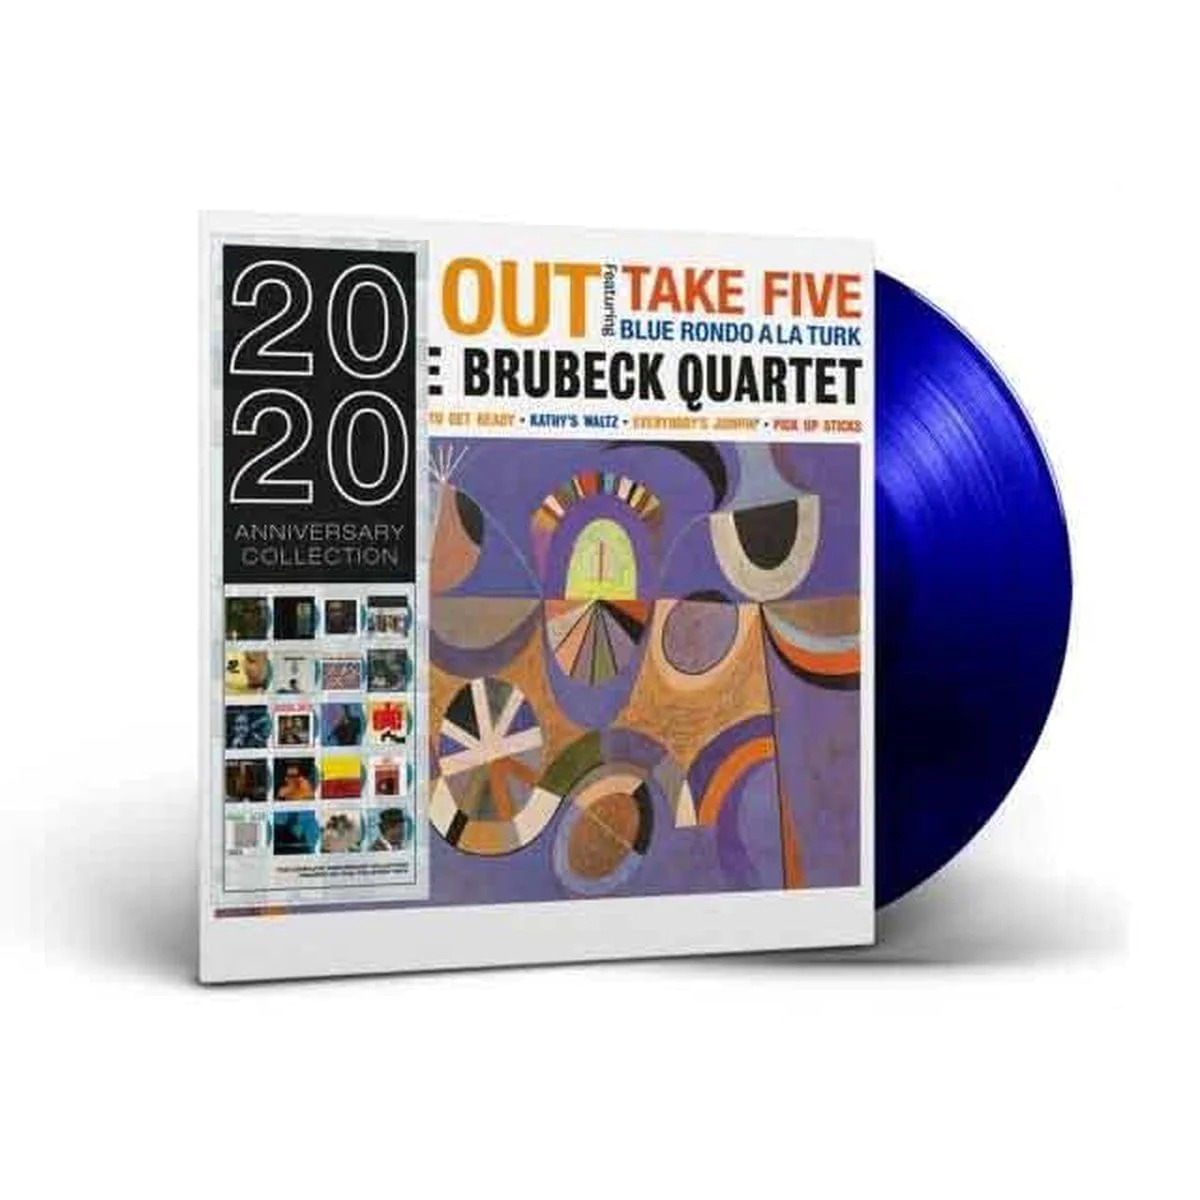 The Dave Brubeck Quartet Time Out vinyl lp